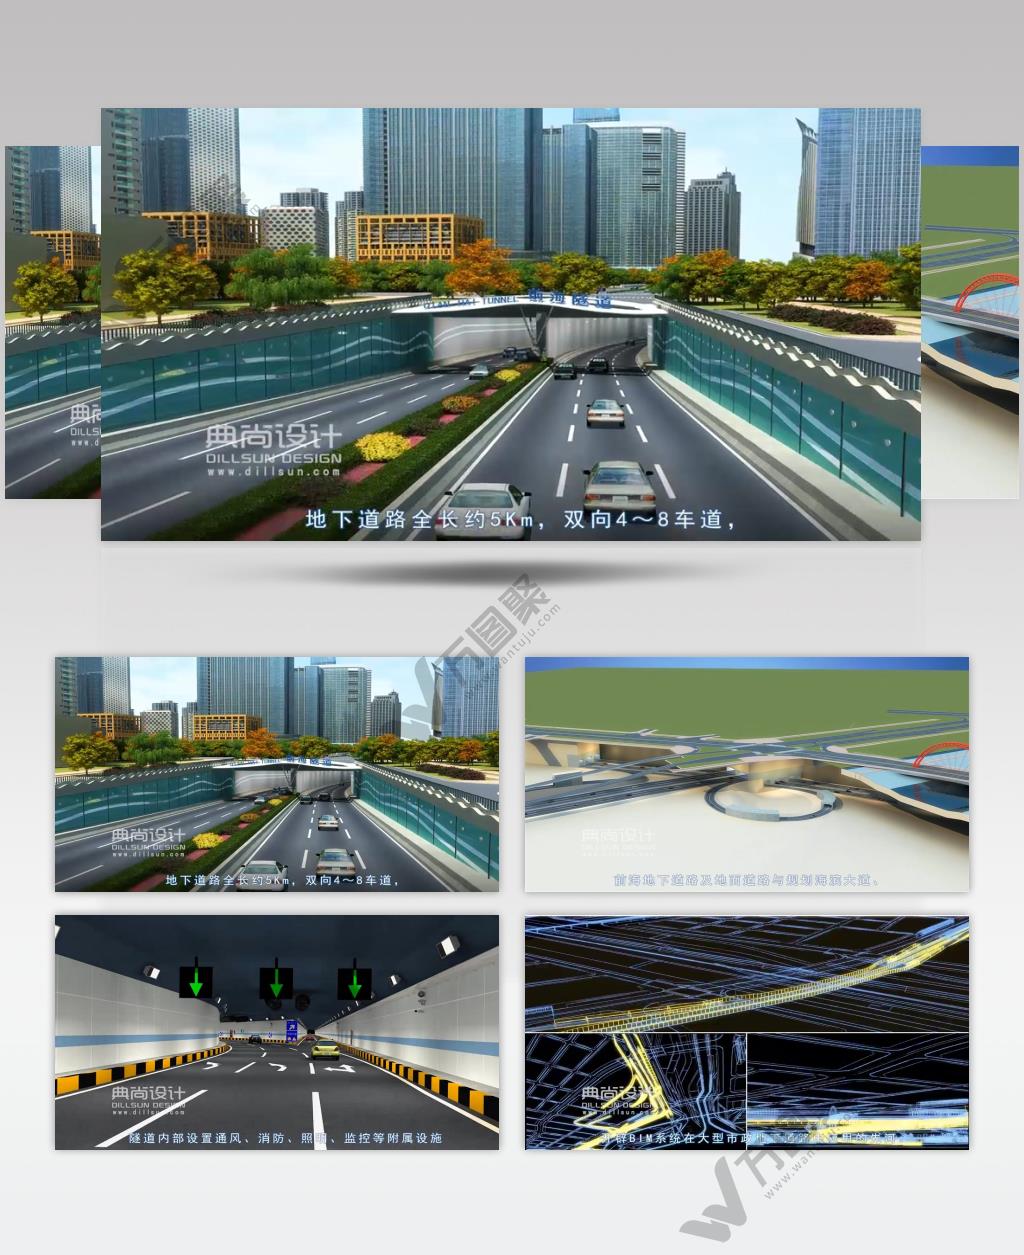 11前海地下道路三维动画-典尚设计- 道路景观三维动画 道路设计动画